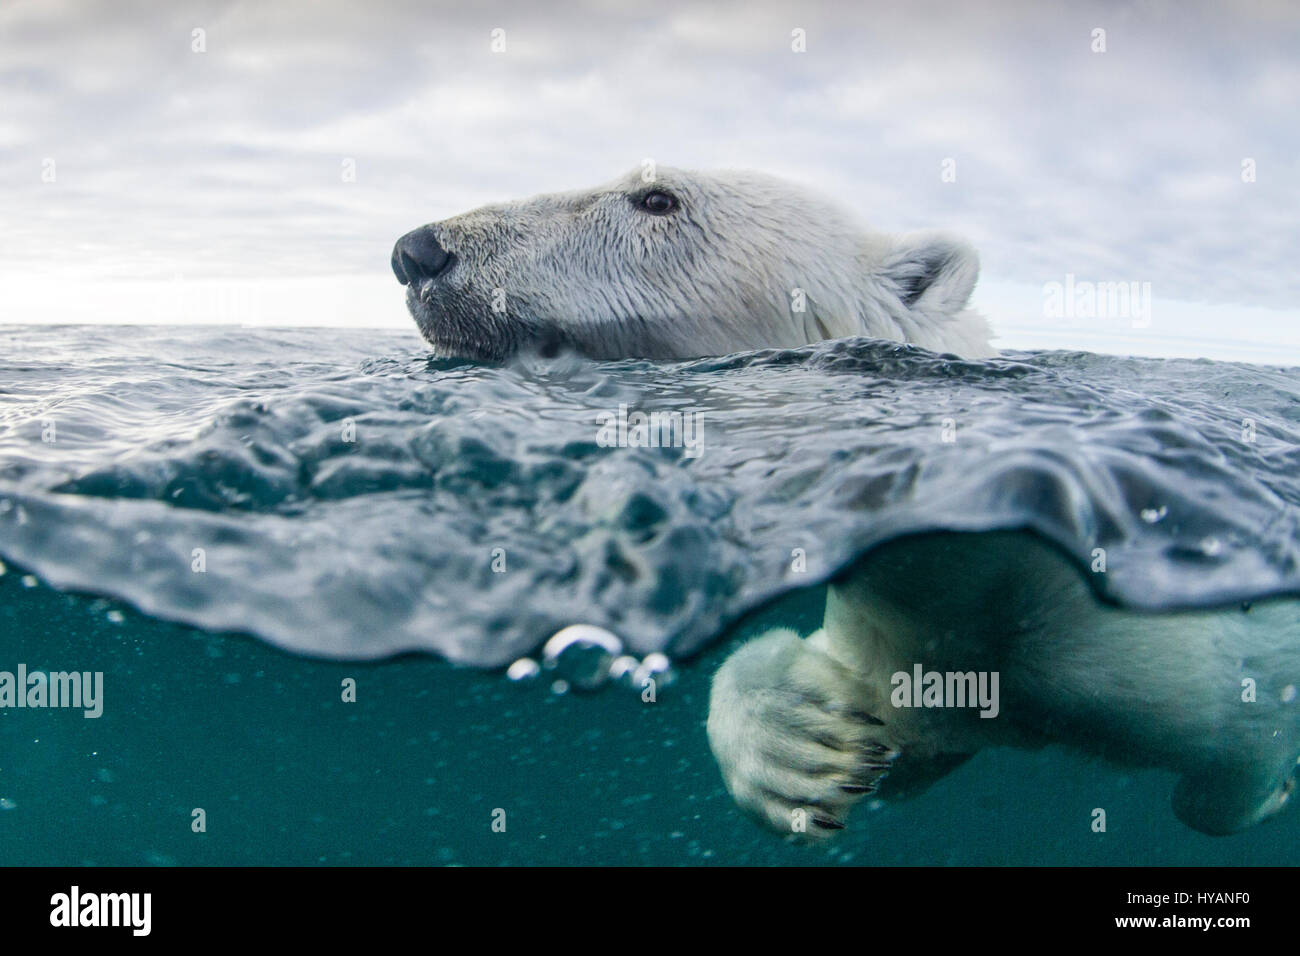 HUSDON BAY, CANADÁ: osos polares nadando. Los osos polares se están convirtiendo en criaturas marinas como resultado de estas fotografías extraordinarias. Falta de caminar sobre el hielo no significa que estas criaturas inteligentes no pueden ir de A a B, están cada vez más aprender a nadar largas distancias en su búsqueda de comida en uno de los entornos más duras del mundo. Las fotografías de la Bahía de Hudson, Canadá muestran hambrientos osos polares viven tanto bajo el agua como en la tierra, nadando tan cerca de la cámara se obtiene una vista de lo que muchas juntas deben ver por la última vez - las poderosas mandíbulas de estas temibles depredadores. Otras fotos sho Foto de stock